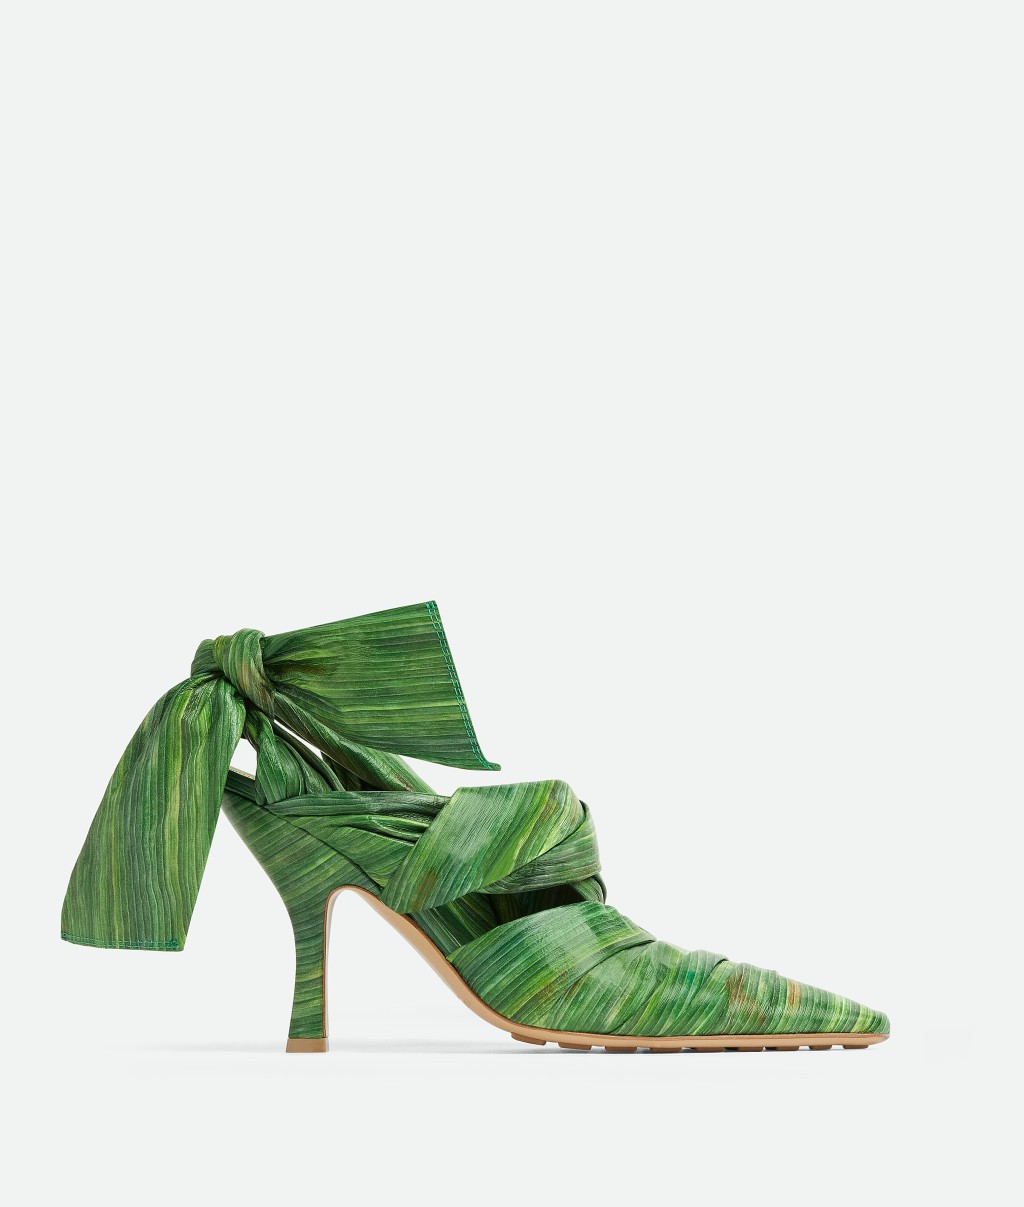 高海宁所穿的高踭鞋就是设计师以热带树叶作灵感，以热带树叶印花皮革制成的露跟高跟鞋。